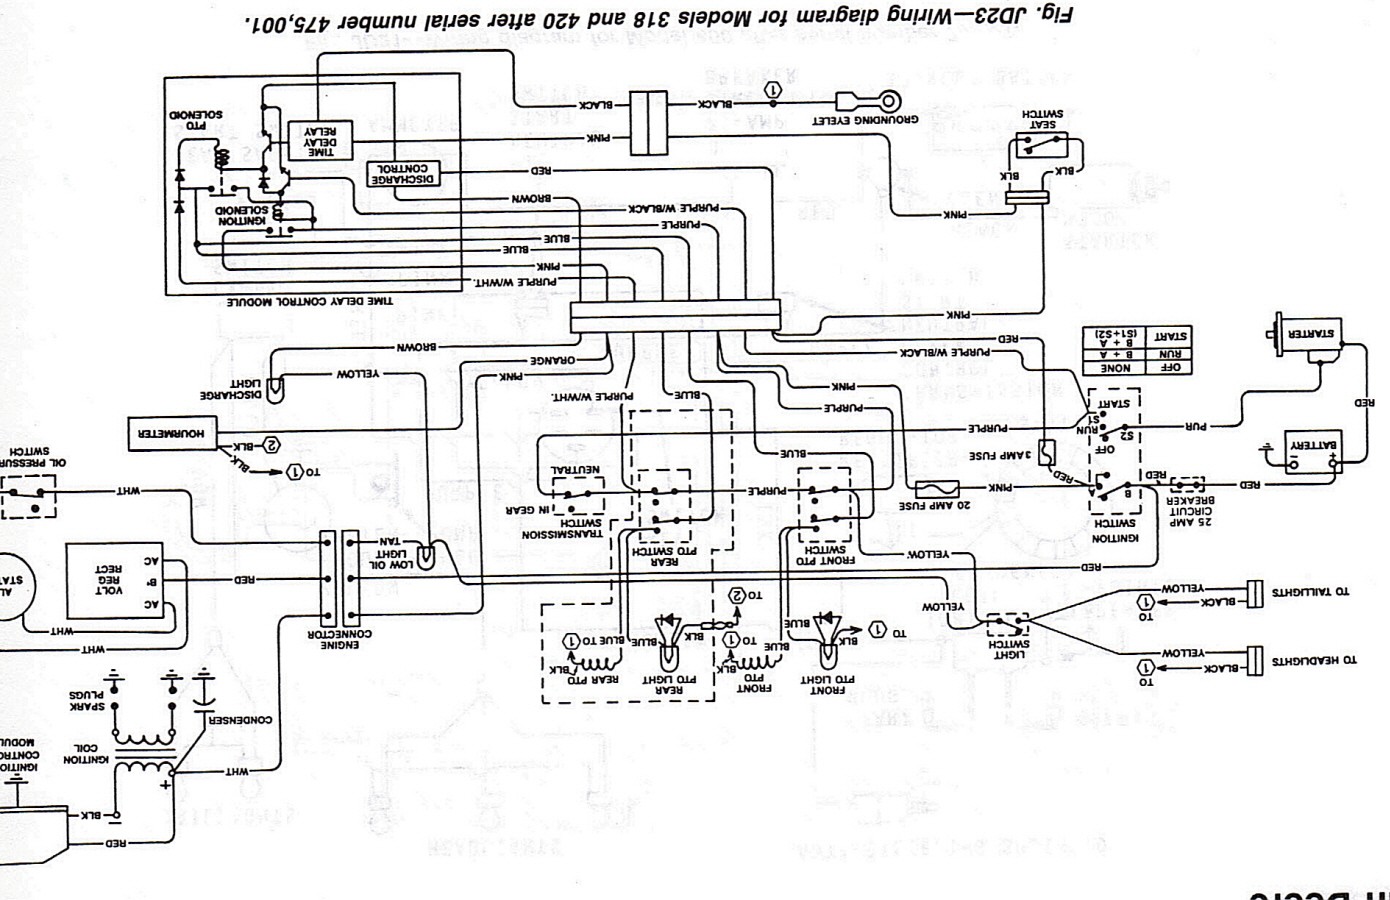 John Deere Electrical Schematic Schema Electrique John Deere 332 Bois Eco Concept Of John Deere Electrical Schematic